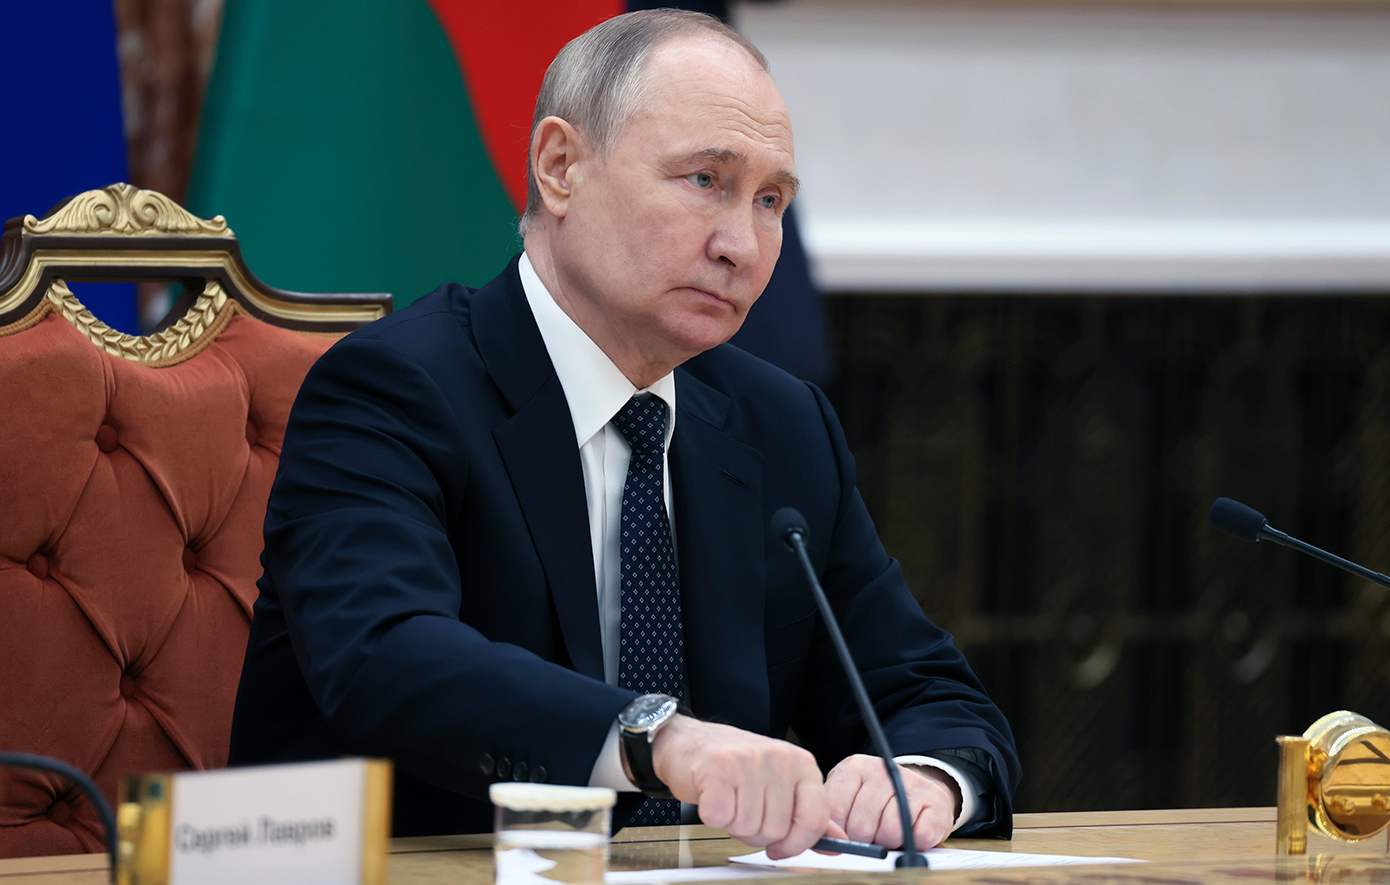 Ο Πούτιν διόρισε γραμματέα του Κρατικού Συμβουλίου τον πρώην σωματοφύλακά του, Αλεξέι Ντιούμιν